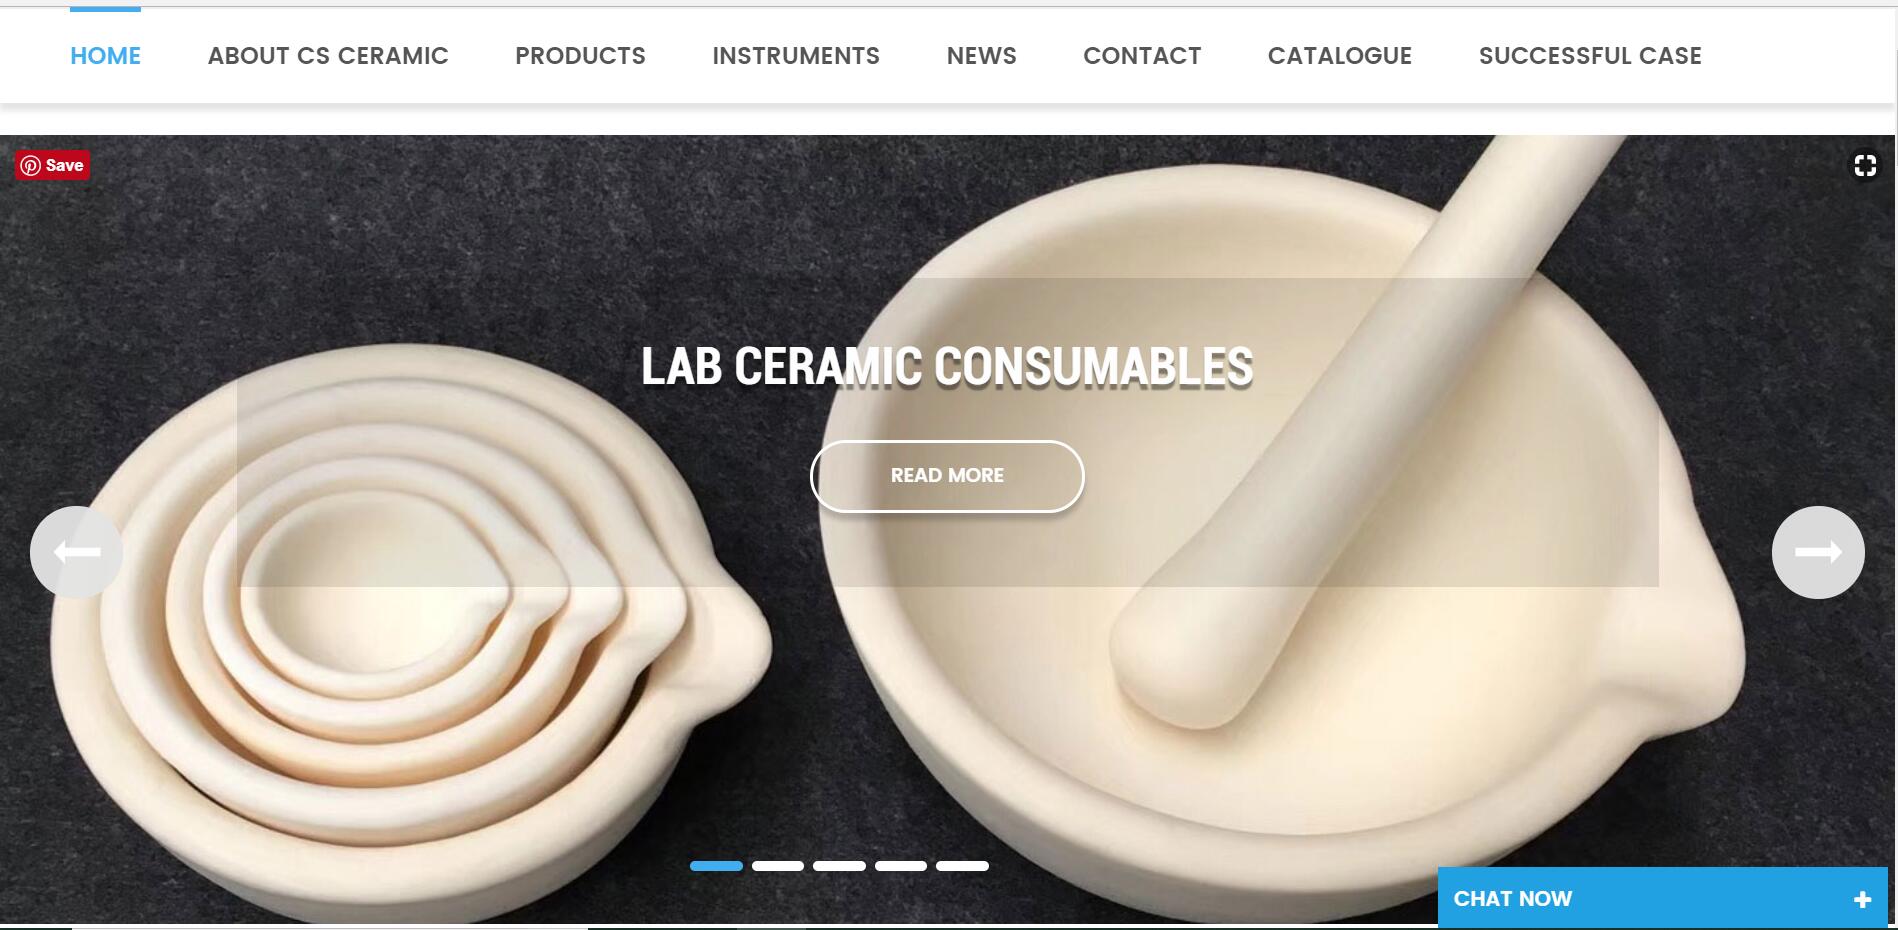 Le site officiel de CS Ceramic propose dix types d'interfaces linguistiques